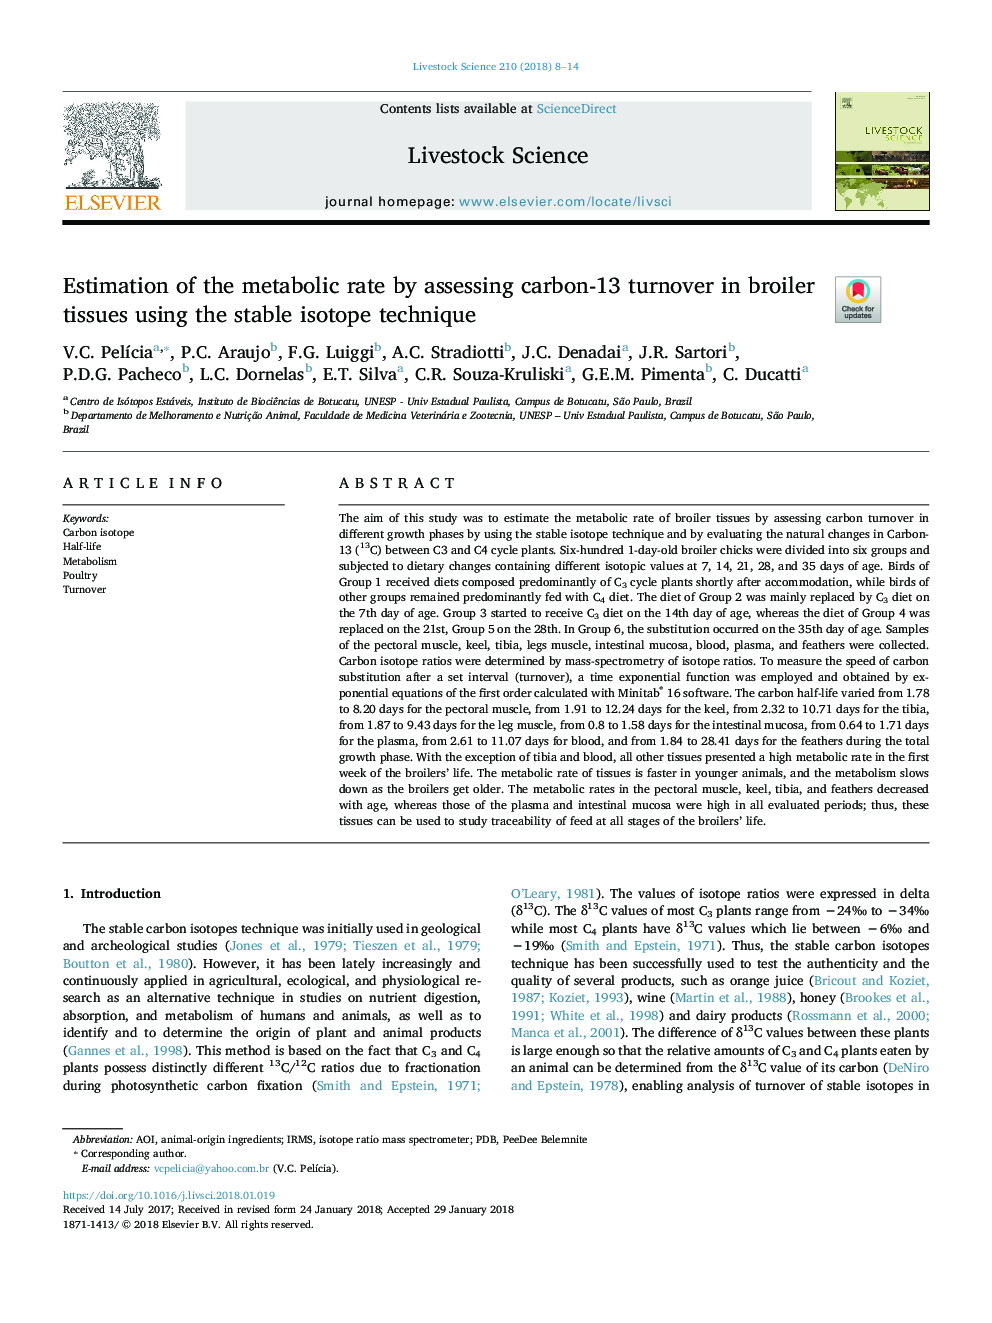 برآورد میزان متابولیسم با ارزیابی گردش کربن 13 در بافت های گوشتی با استفاده از روش ایزوتوپ پایدار 